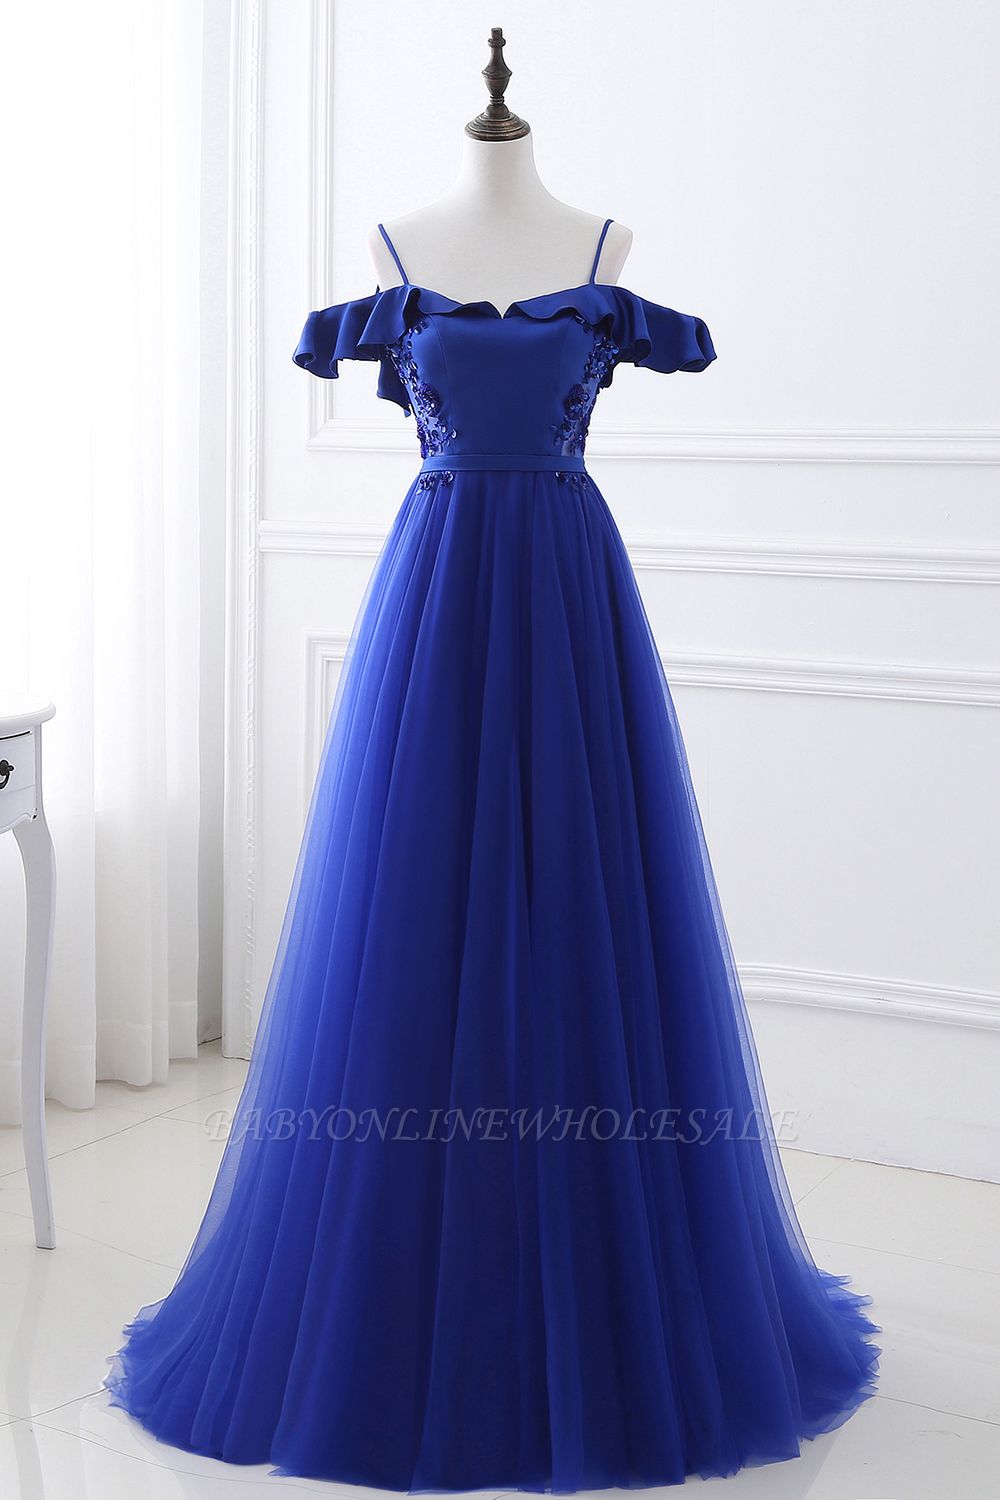 Impresionante del hombro azul Tulle vestido de fiesta vestidos de baile